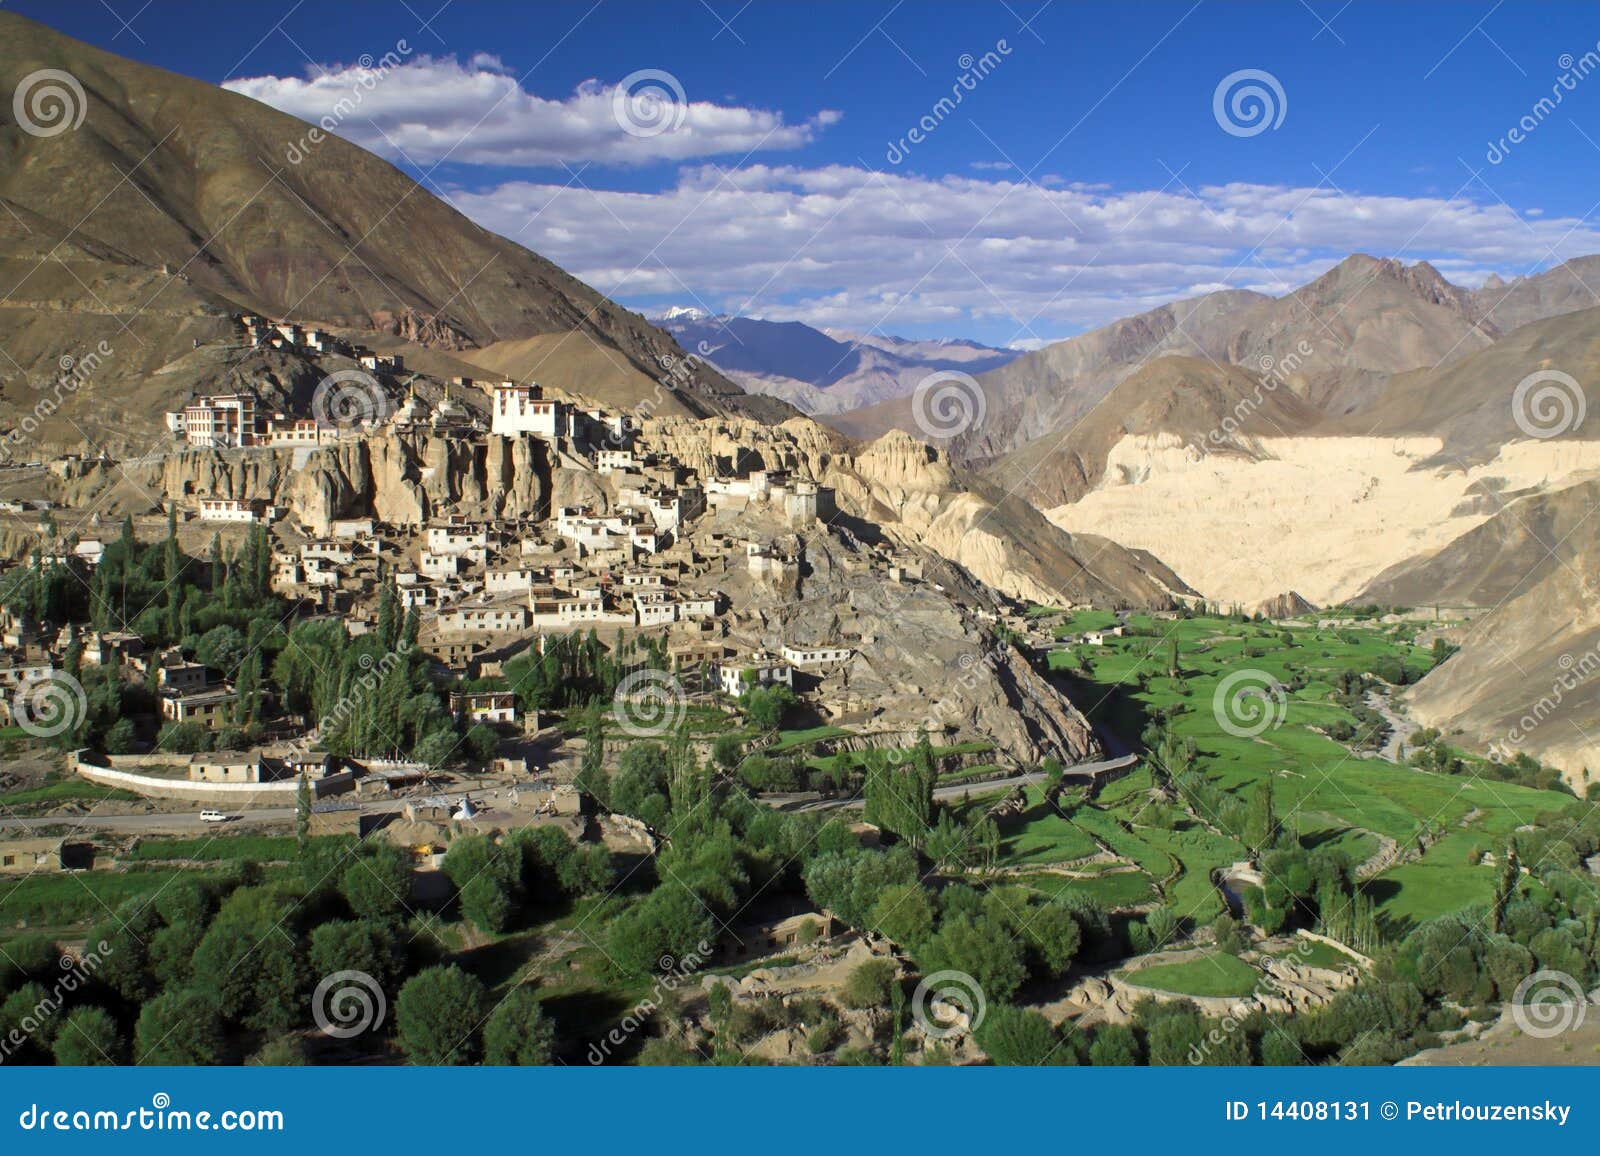 lamayuru buddhist monastery and village in ladakh